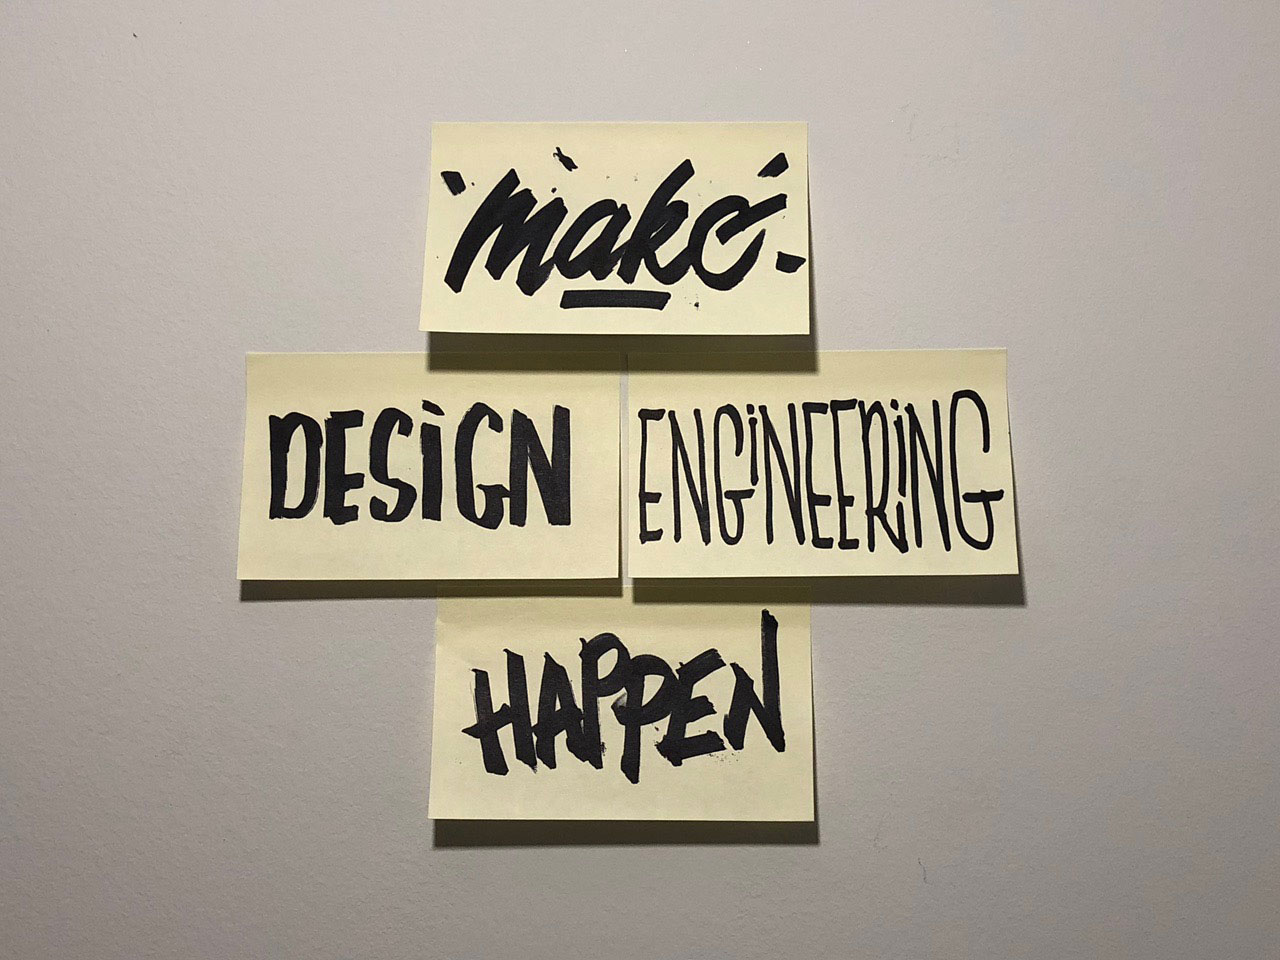 Make Design Engineering Happen